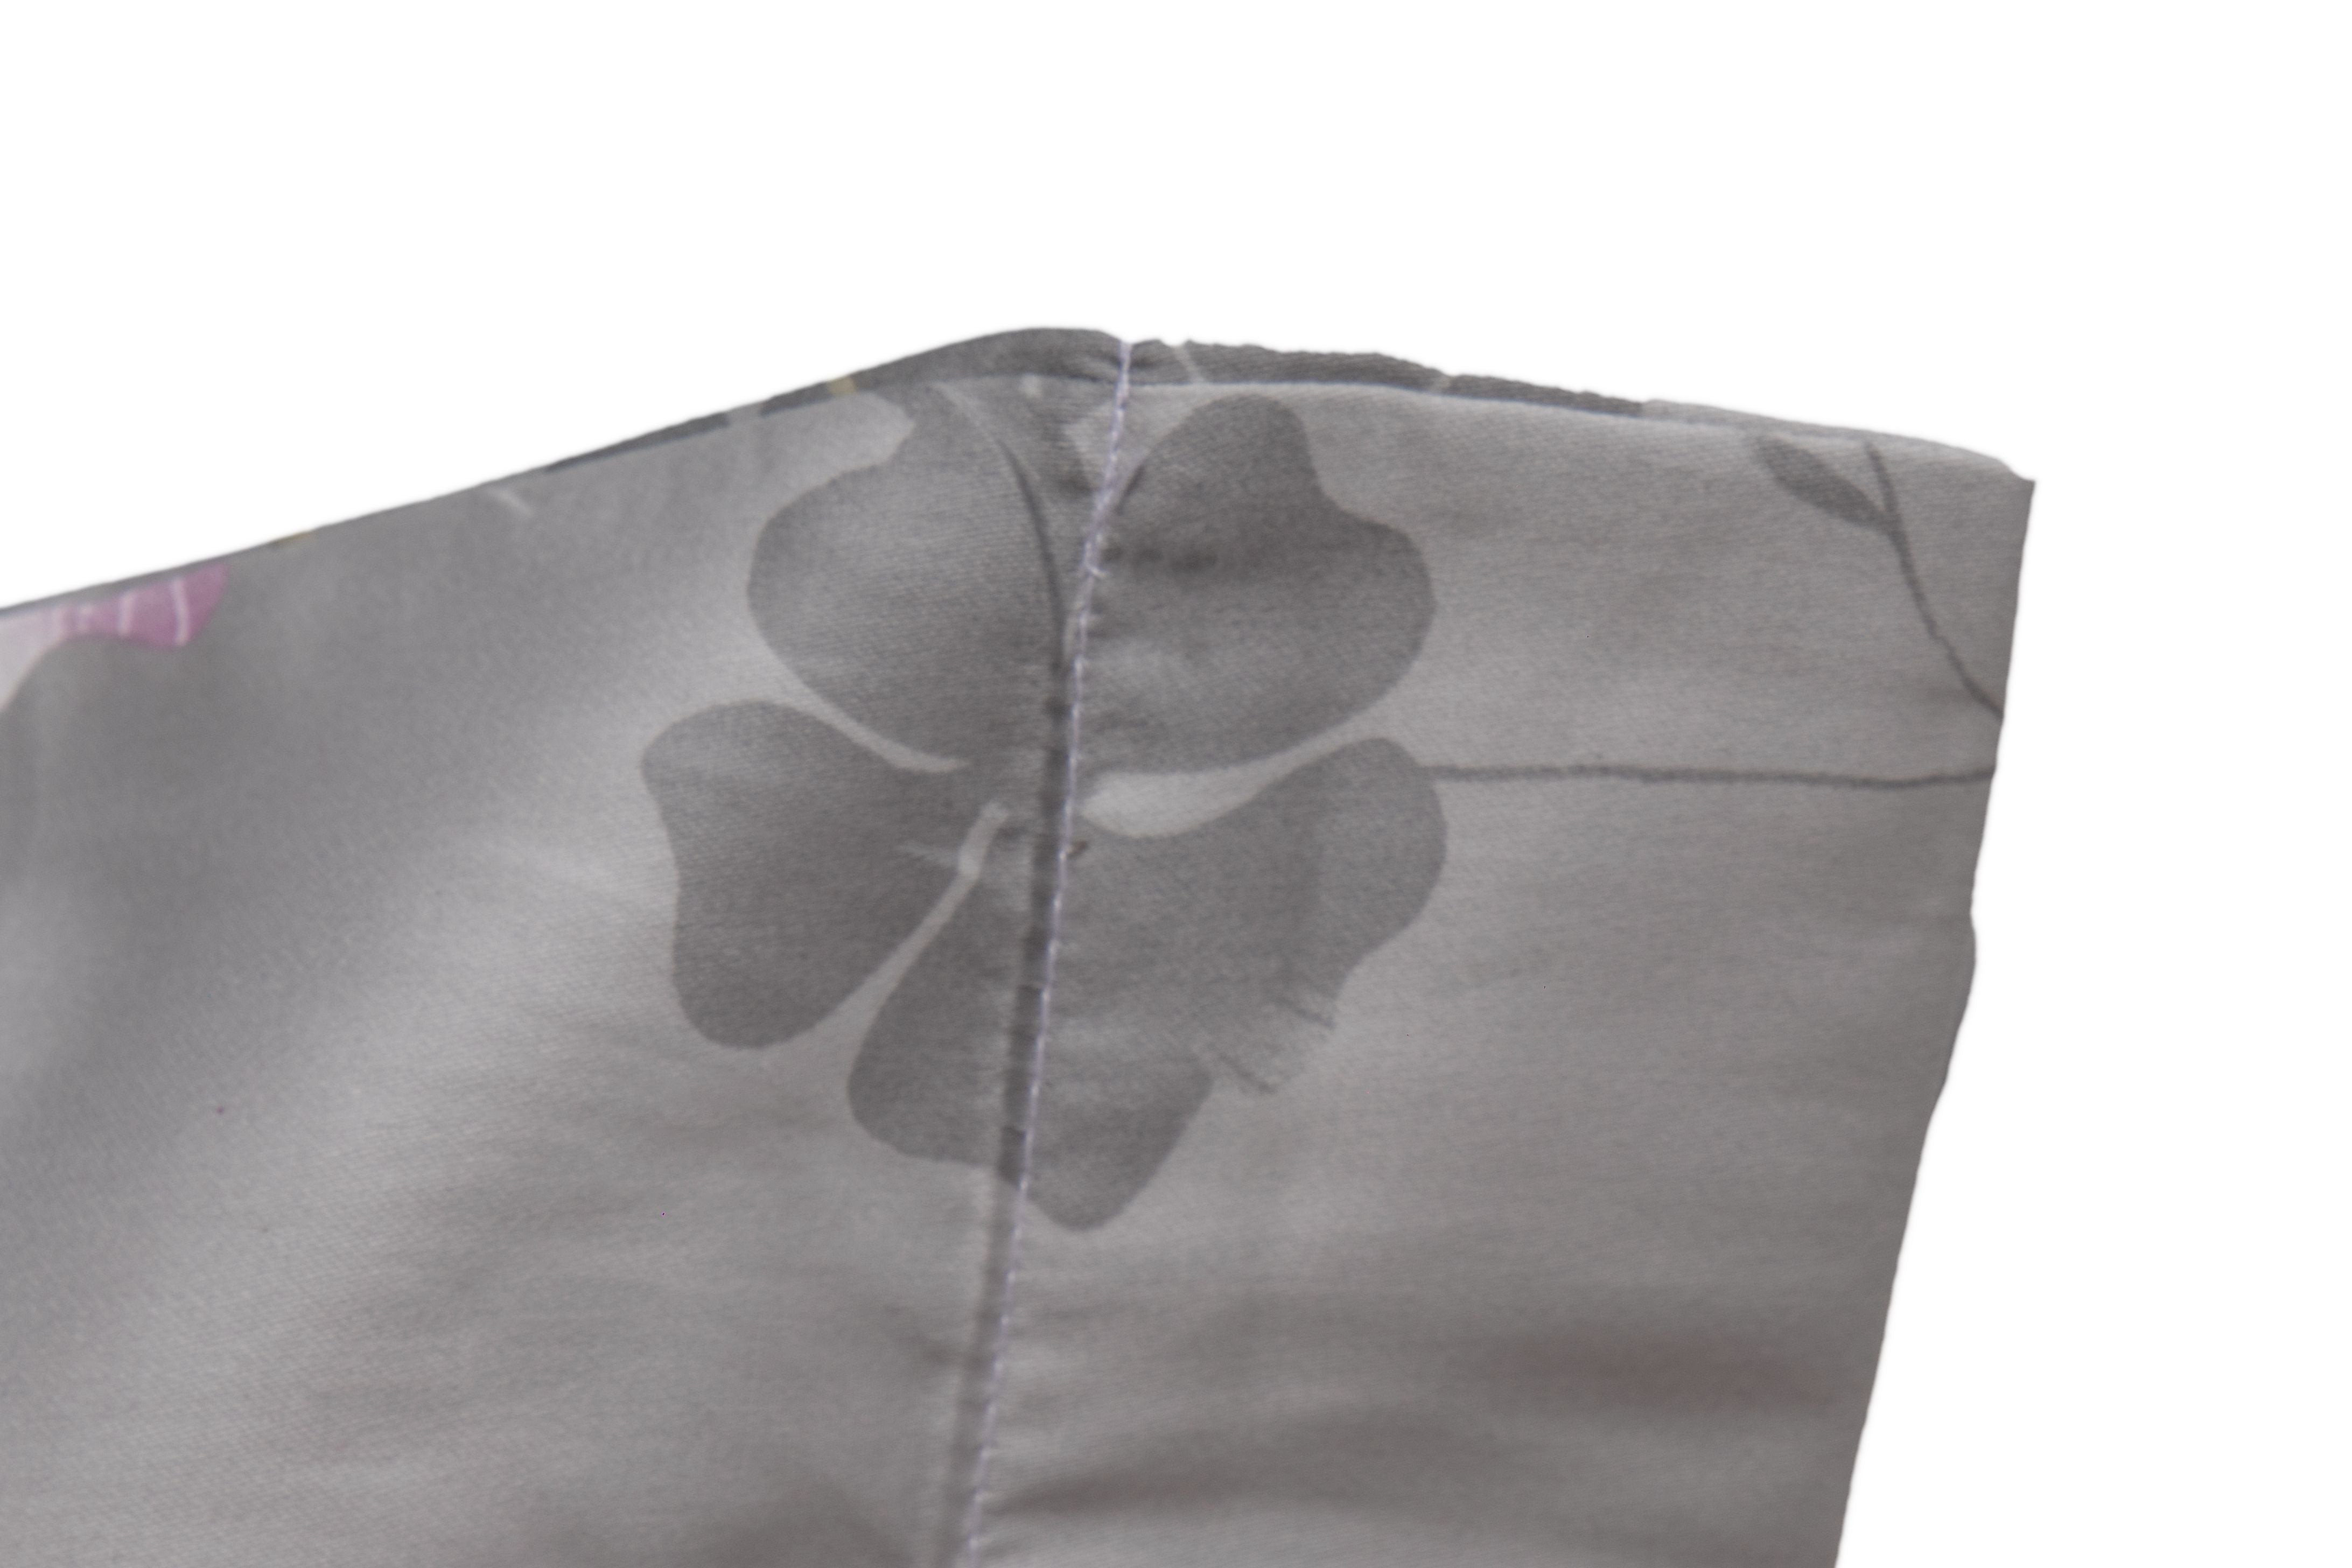 Completo letto lenzuola stampato stampa fantasia in raso di puro di cotone made in Italy MATRIMONIALE KYOTO GRIGIO - Vanita di raso